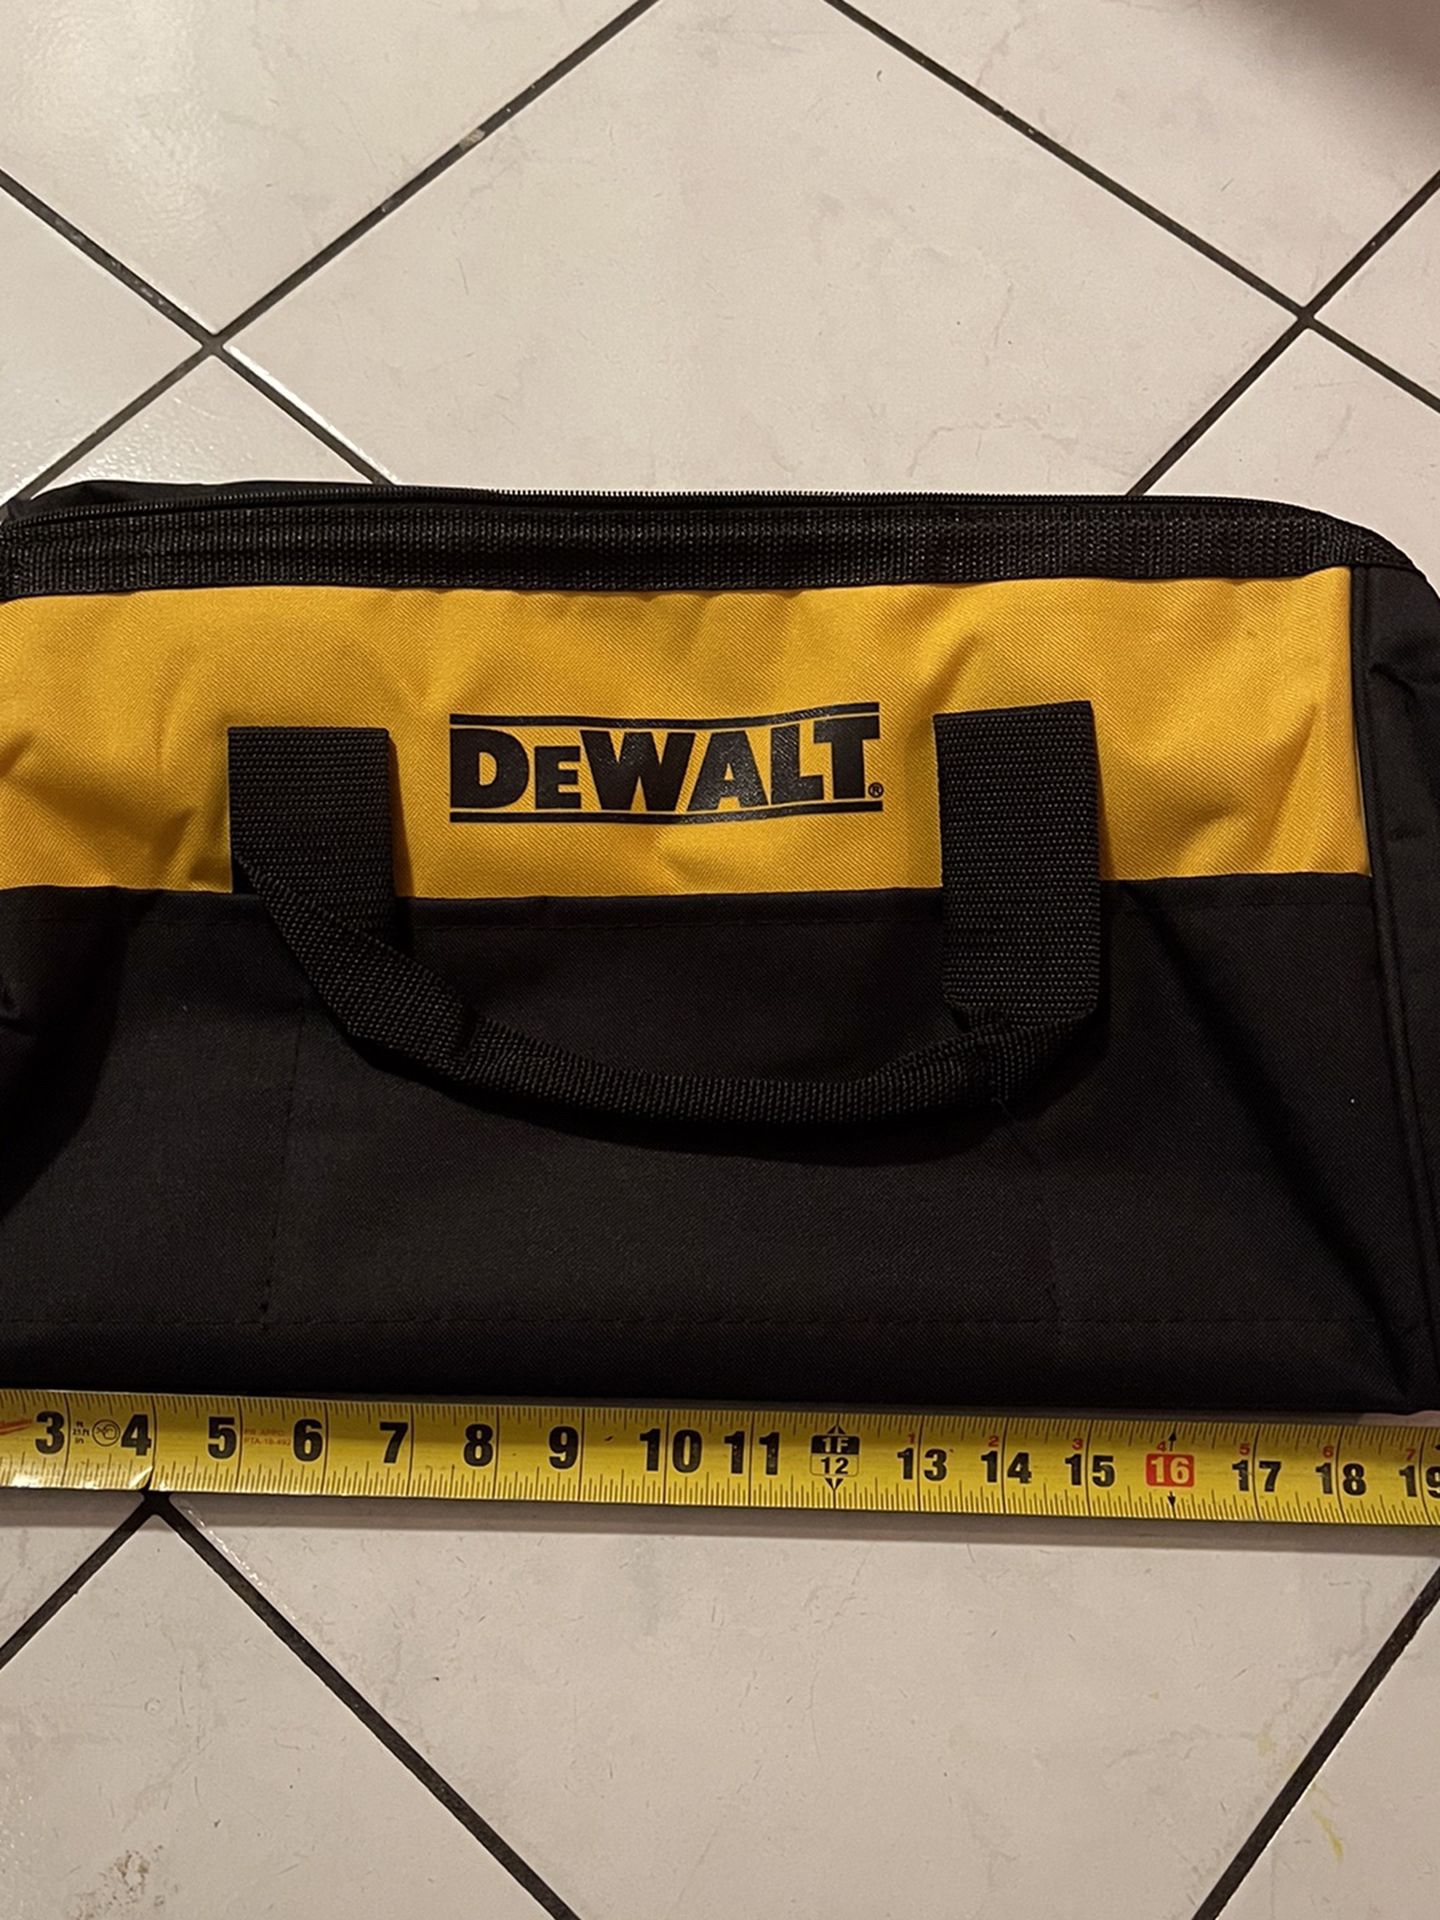 Dewalt Tool Bags (BRAND NEW . NUEVA )…$20